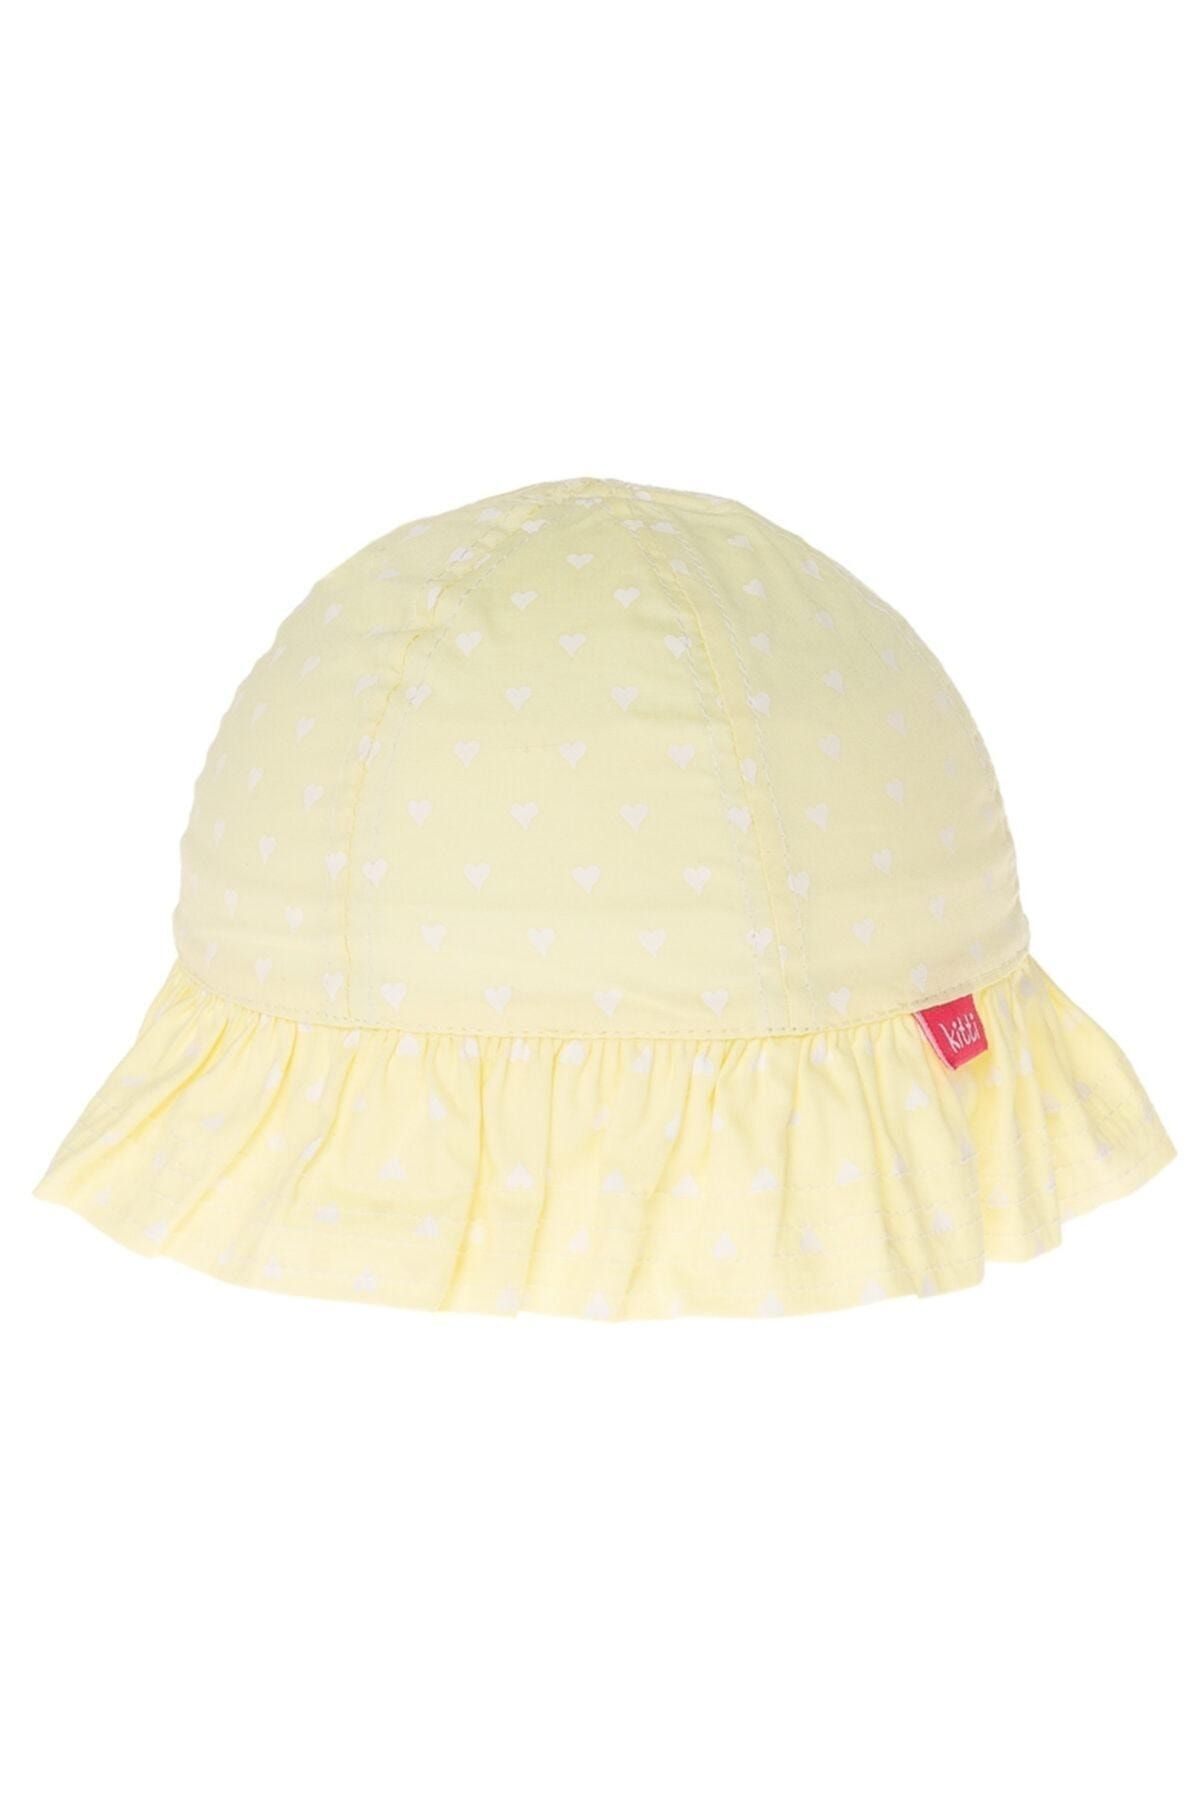 Kitti Kız Çocuk Şapka Kalpli Fötr Şapka Baş Çevresi 44-50 Cm